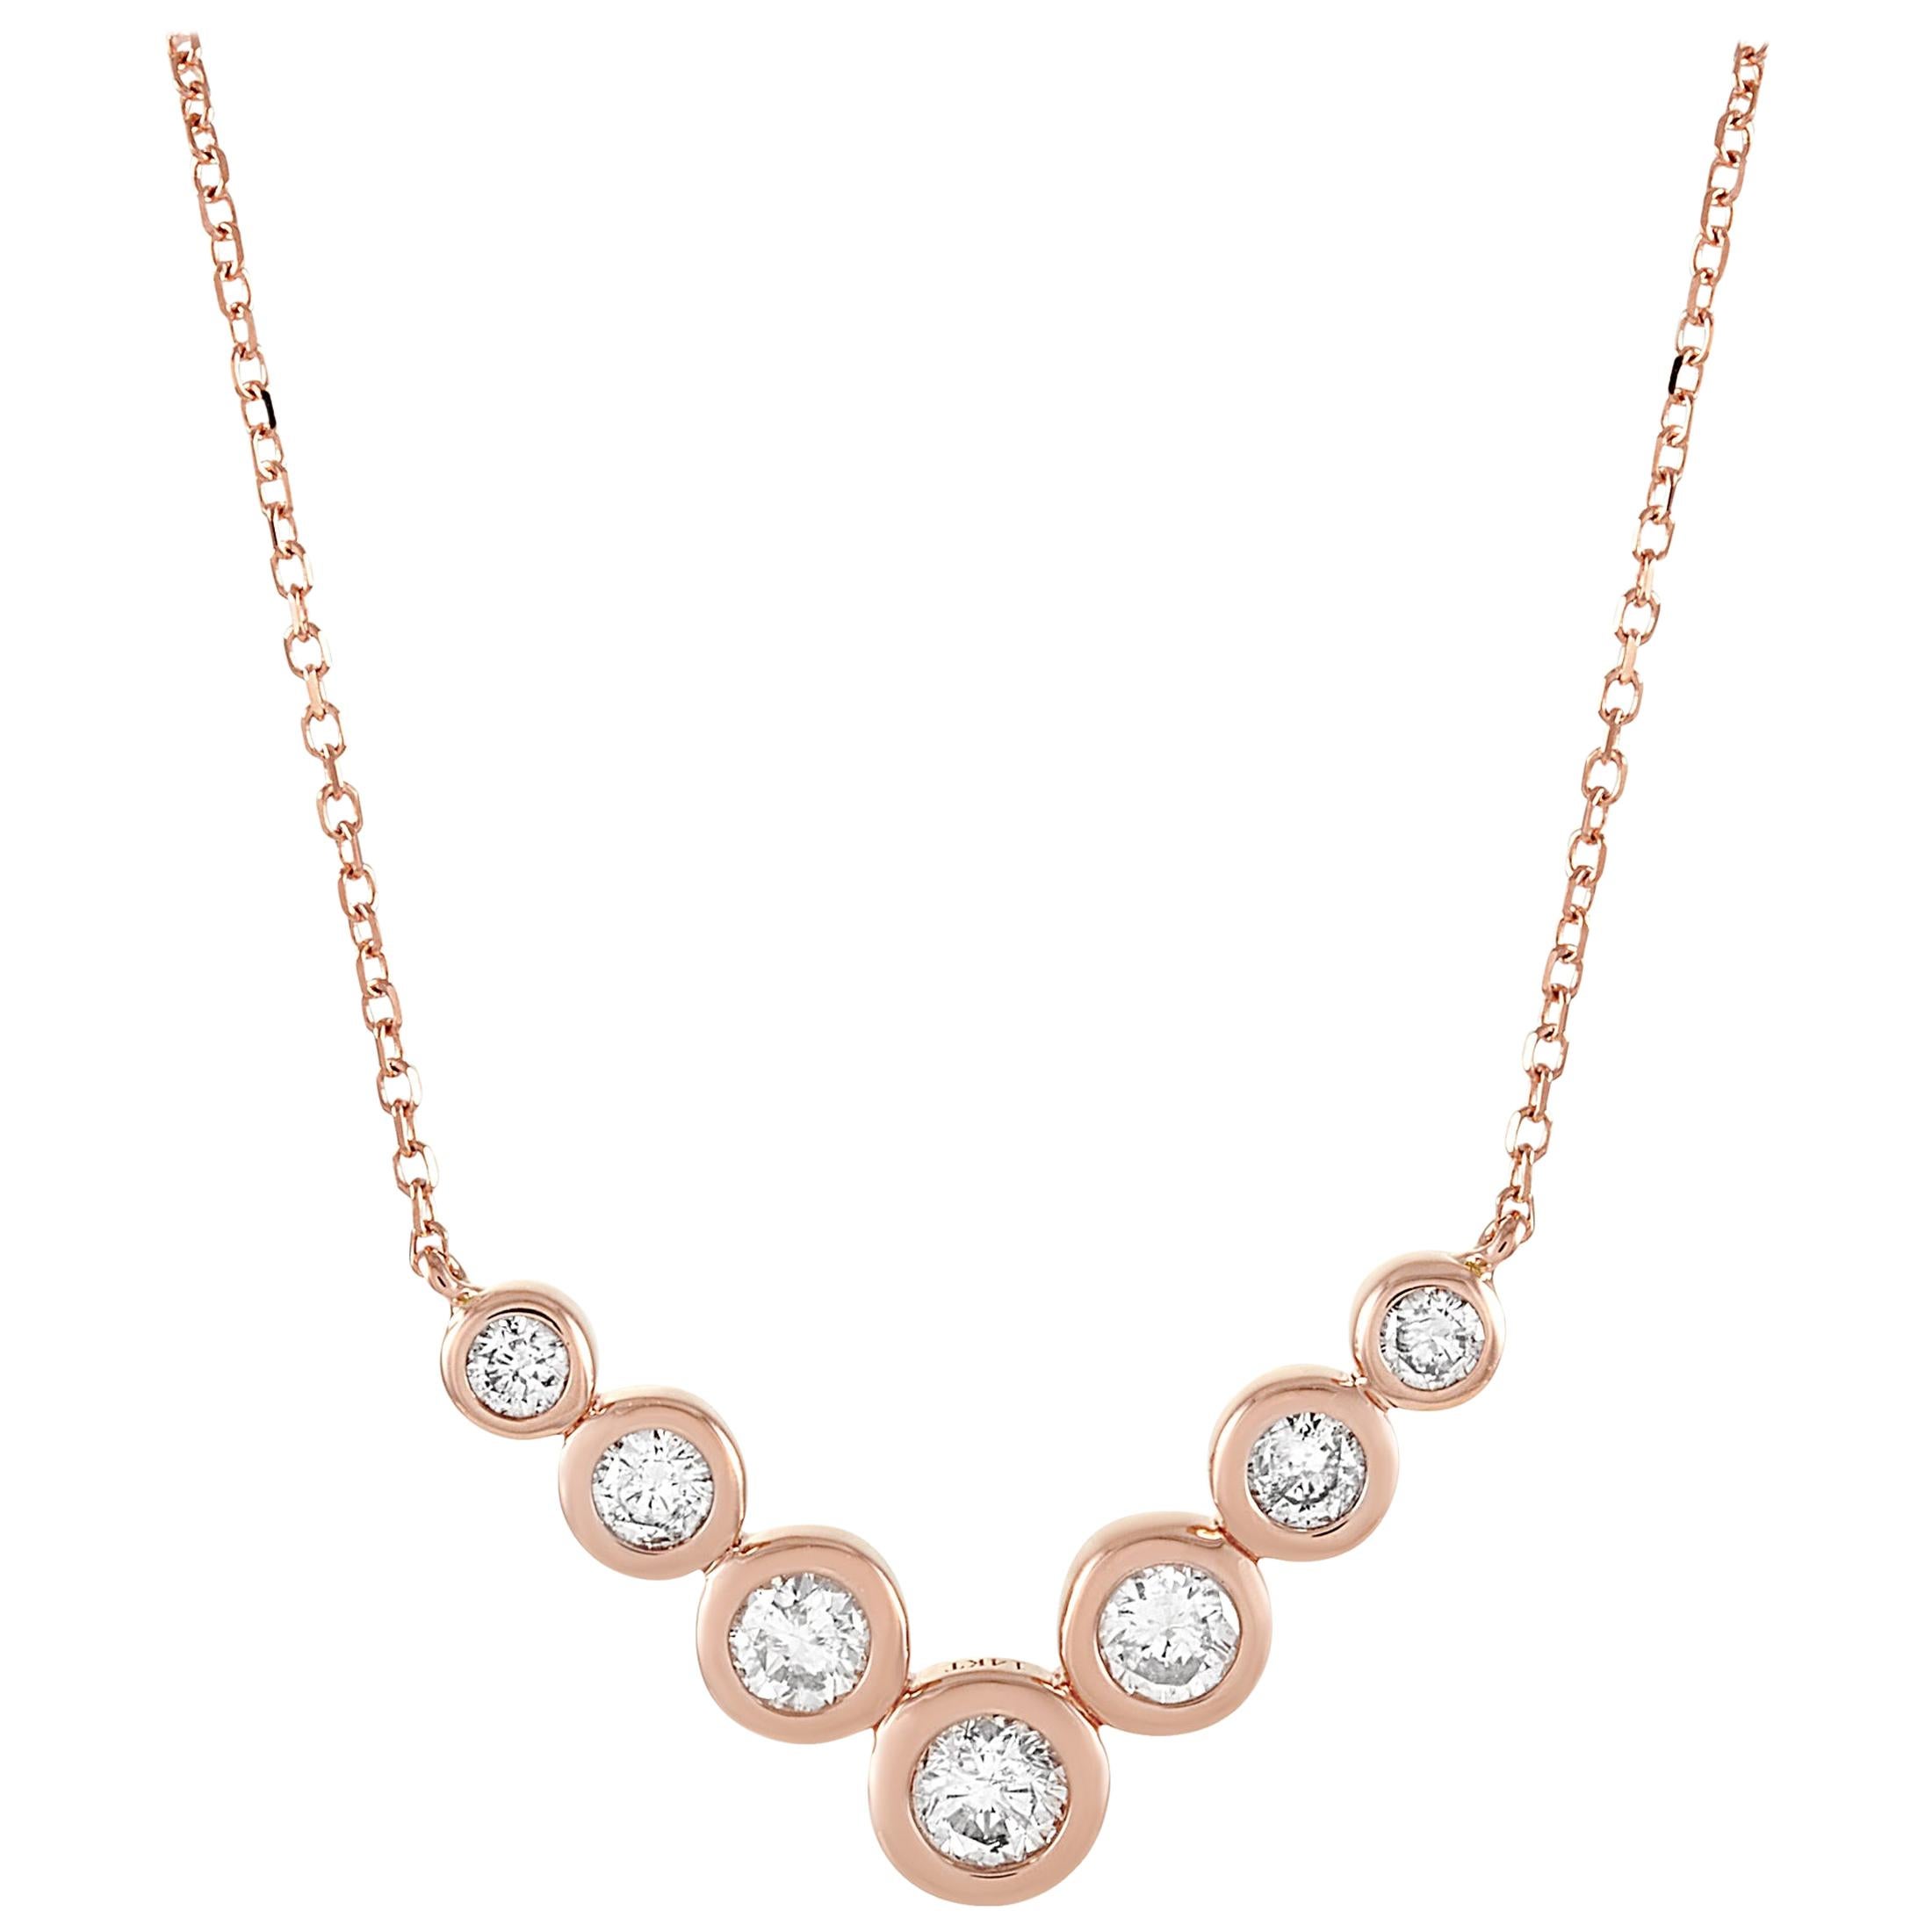 LB Exclusive 14 Karat Rose Gold 0.50 Carat Diamond Pendant Necklace For Sale